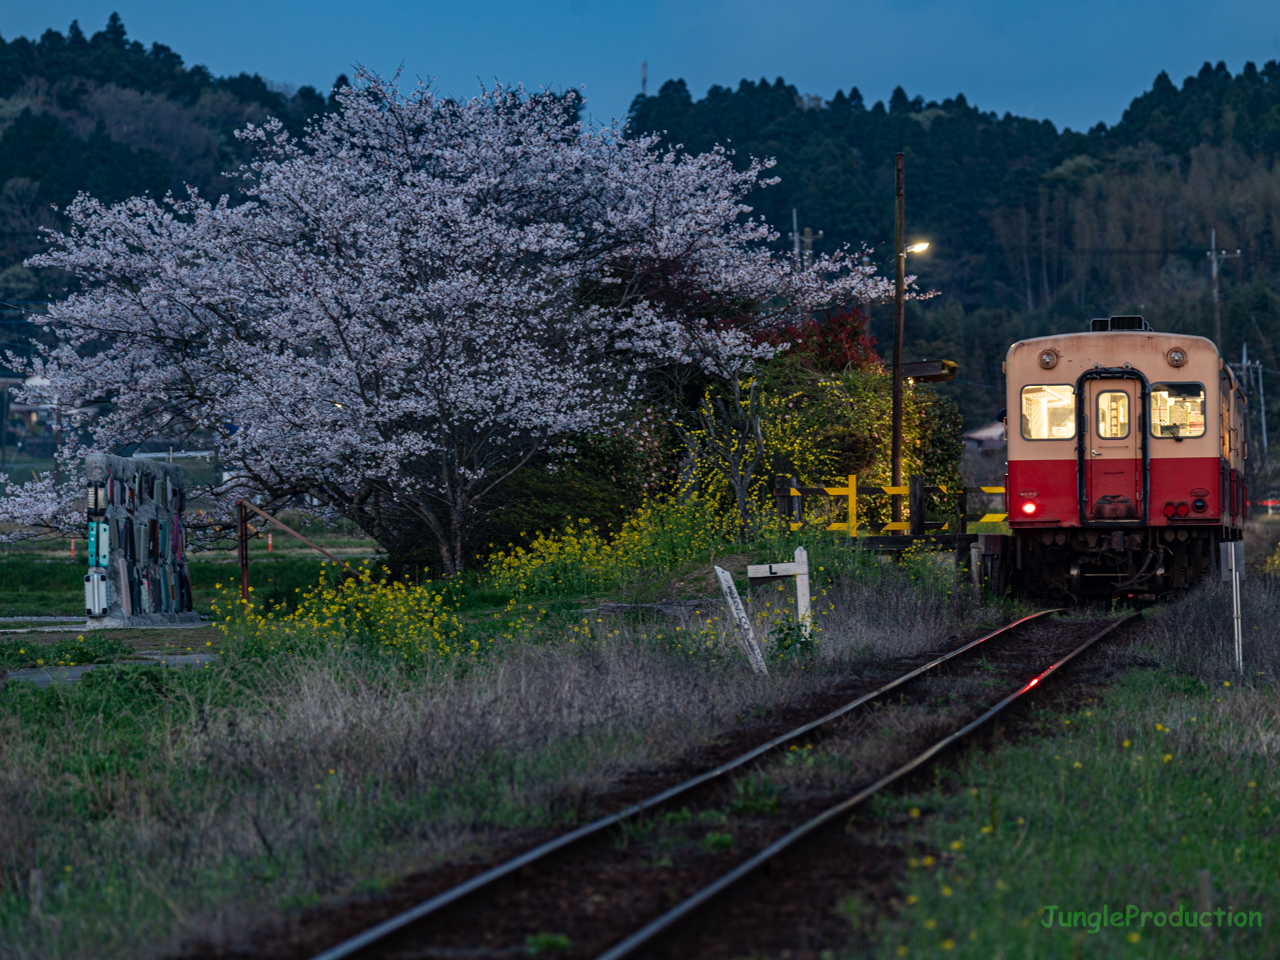 ブルーモーメントタイムに桜と小湊鉄道のキハ200を撮る